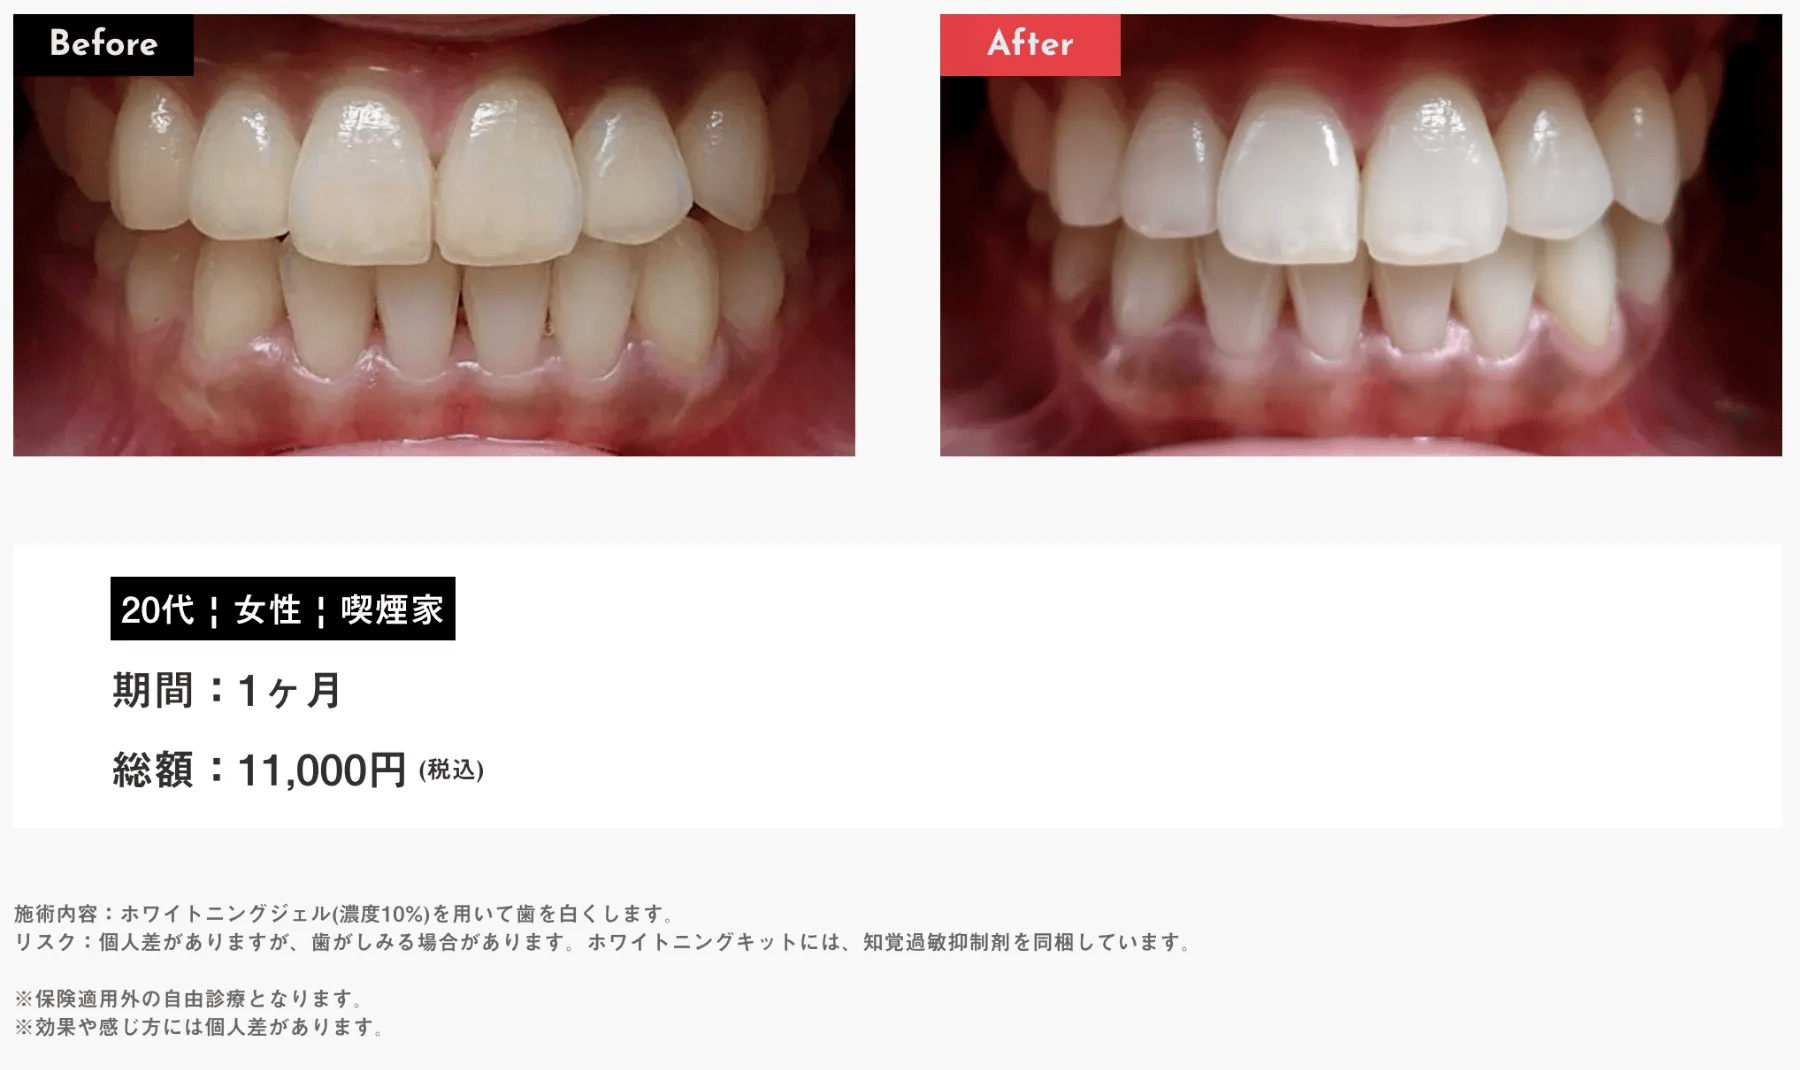 Oh my teeth Whitening(ホームホワイトニング)の症例